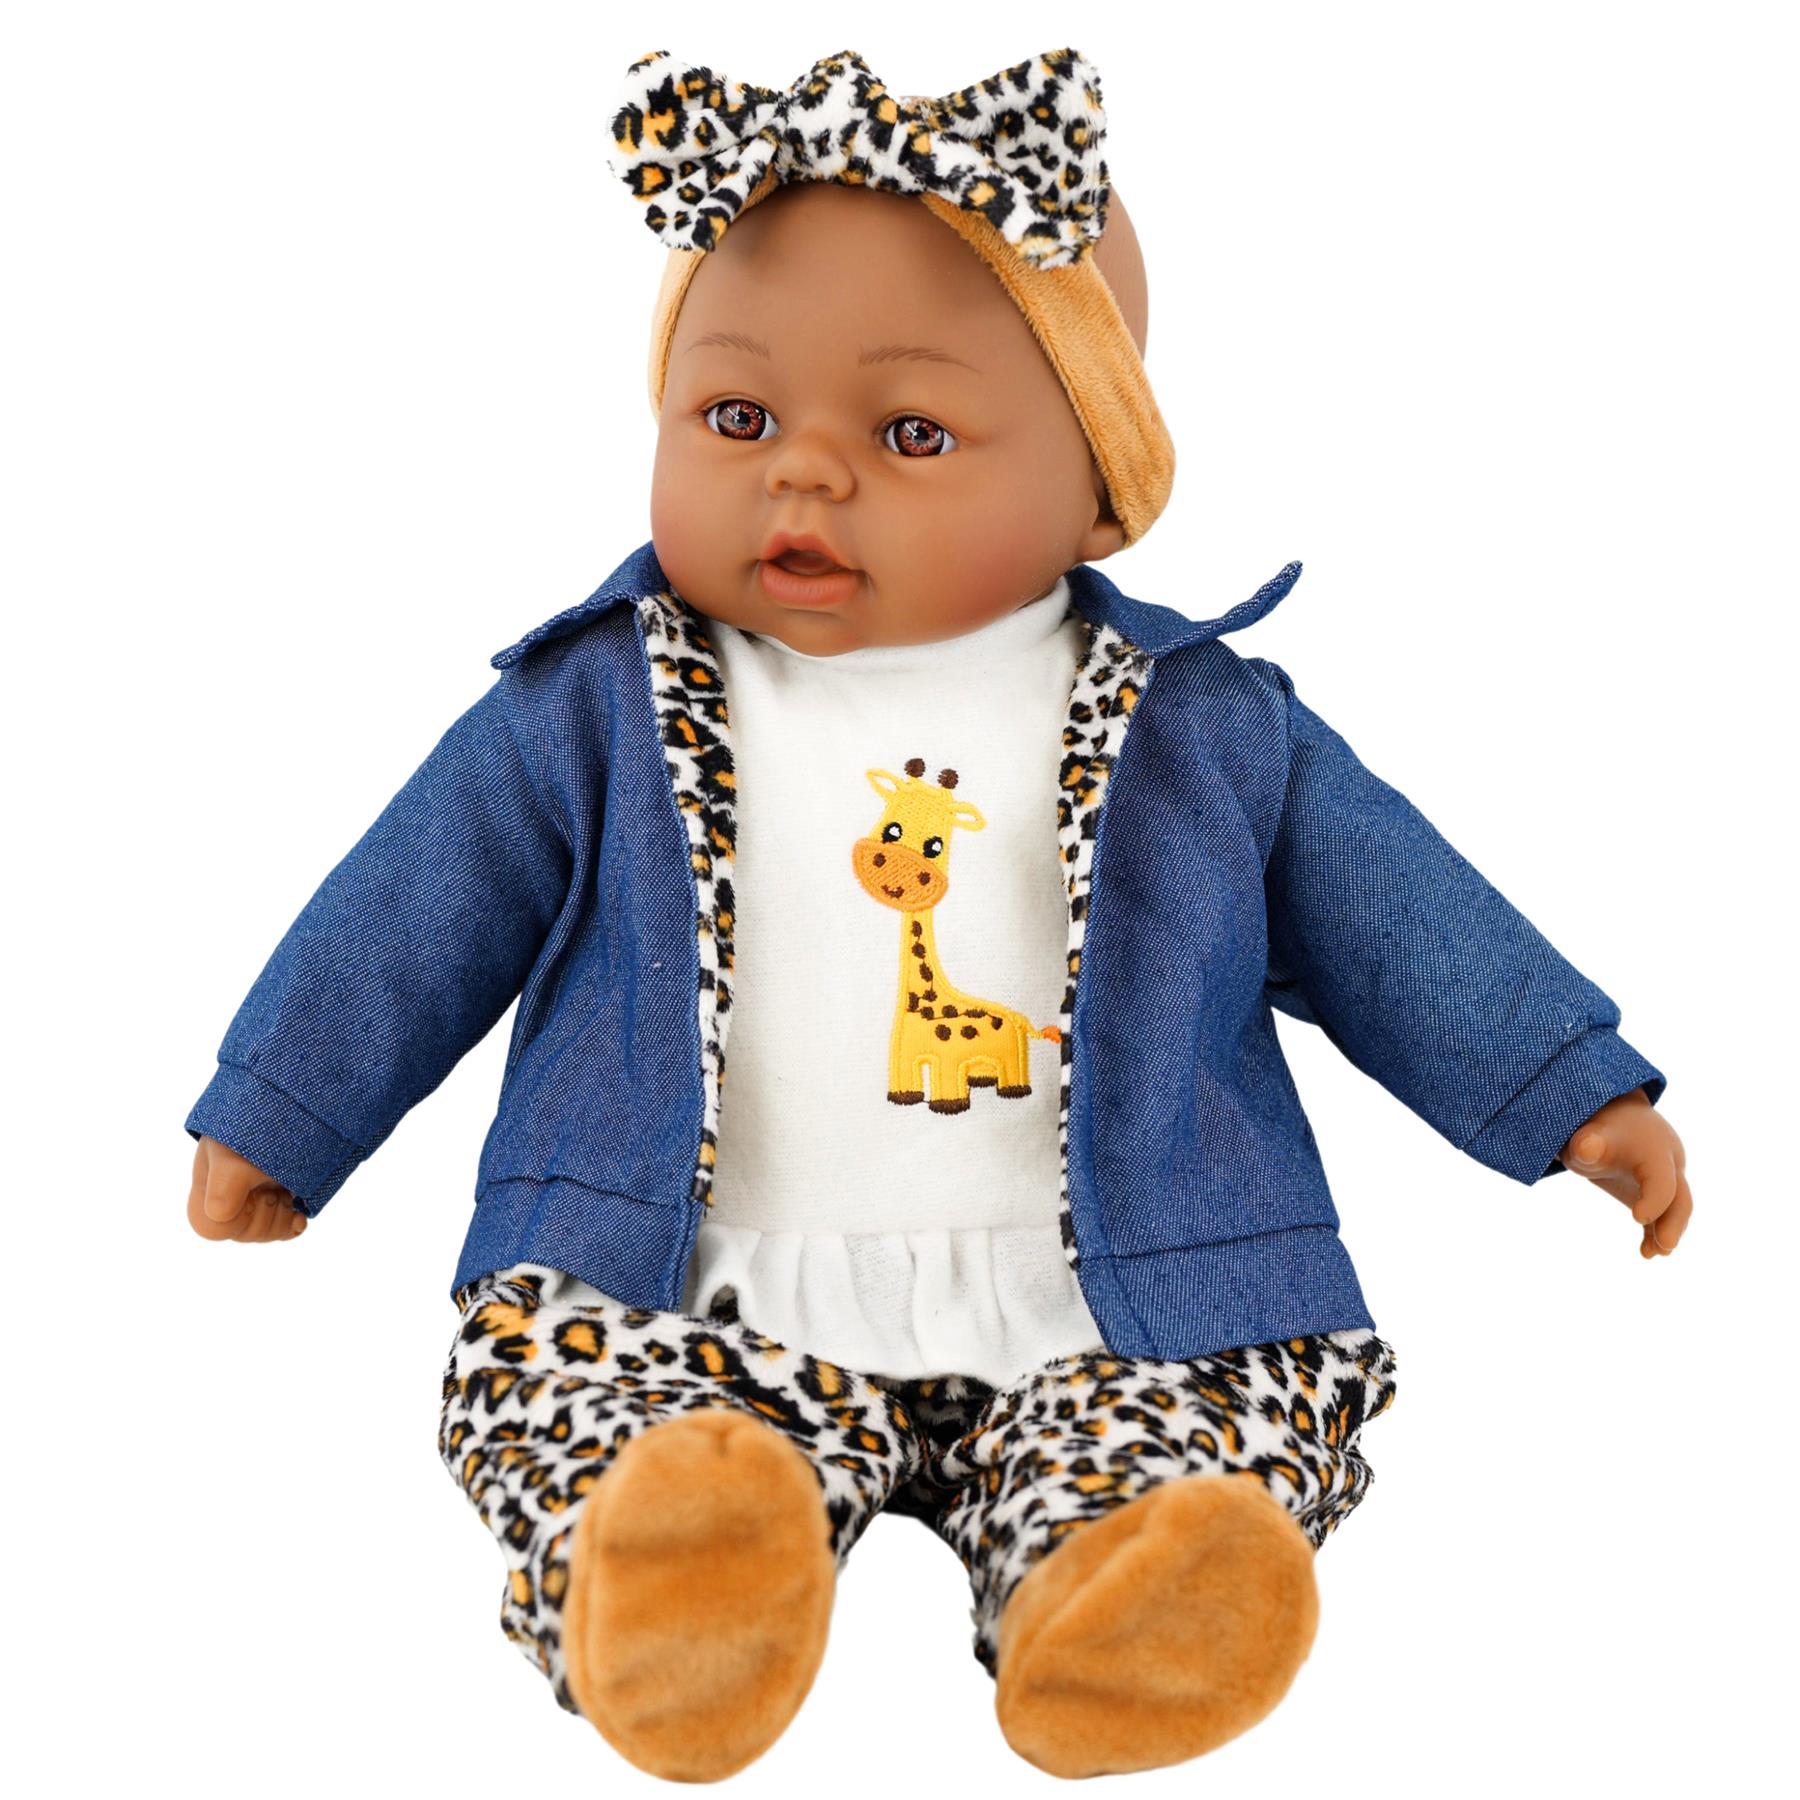 BiBi Black Baby Doll "Cheetah" (45 cm / 18") by BiBi Doll - The Magic Toy Shop